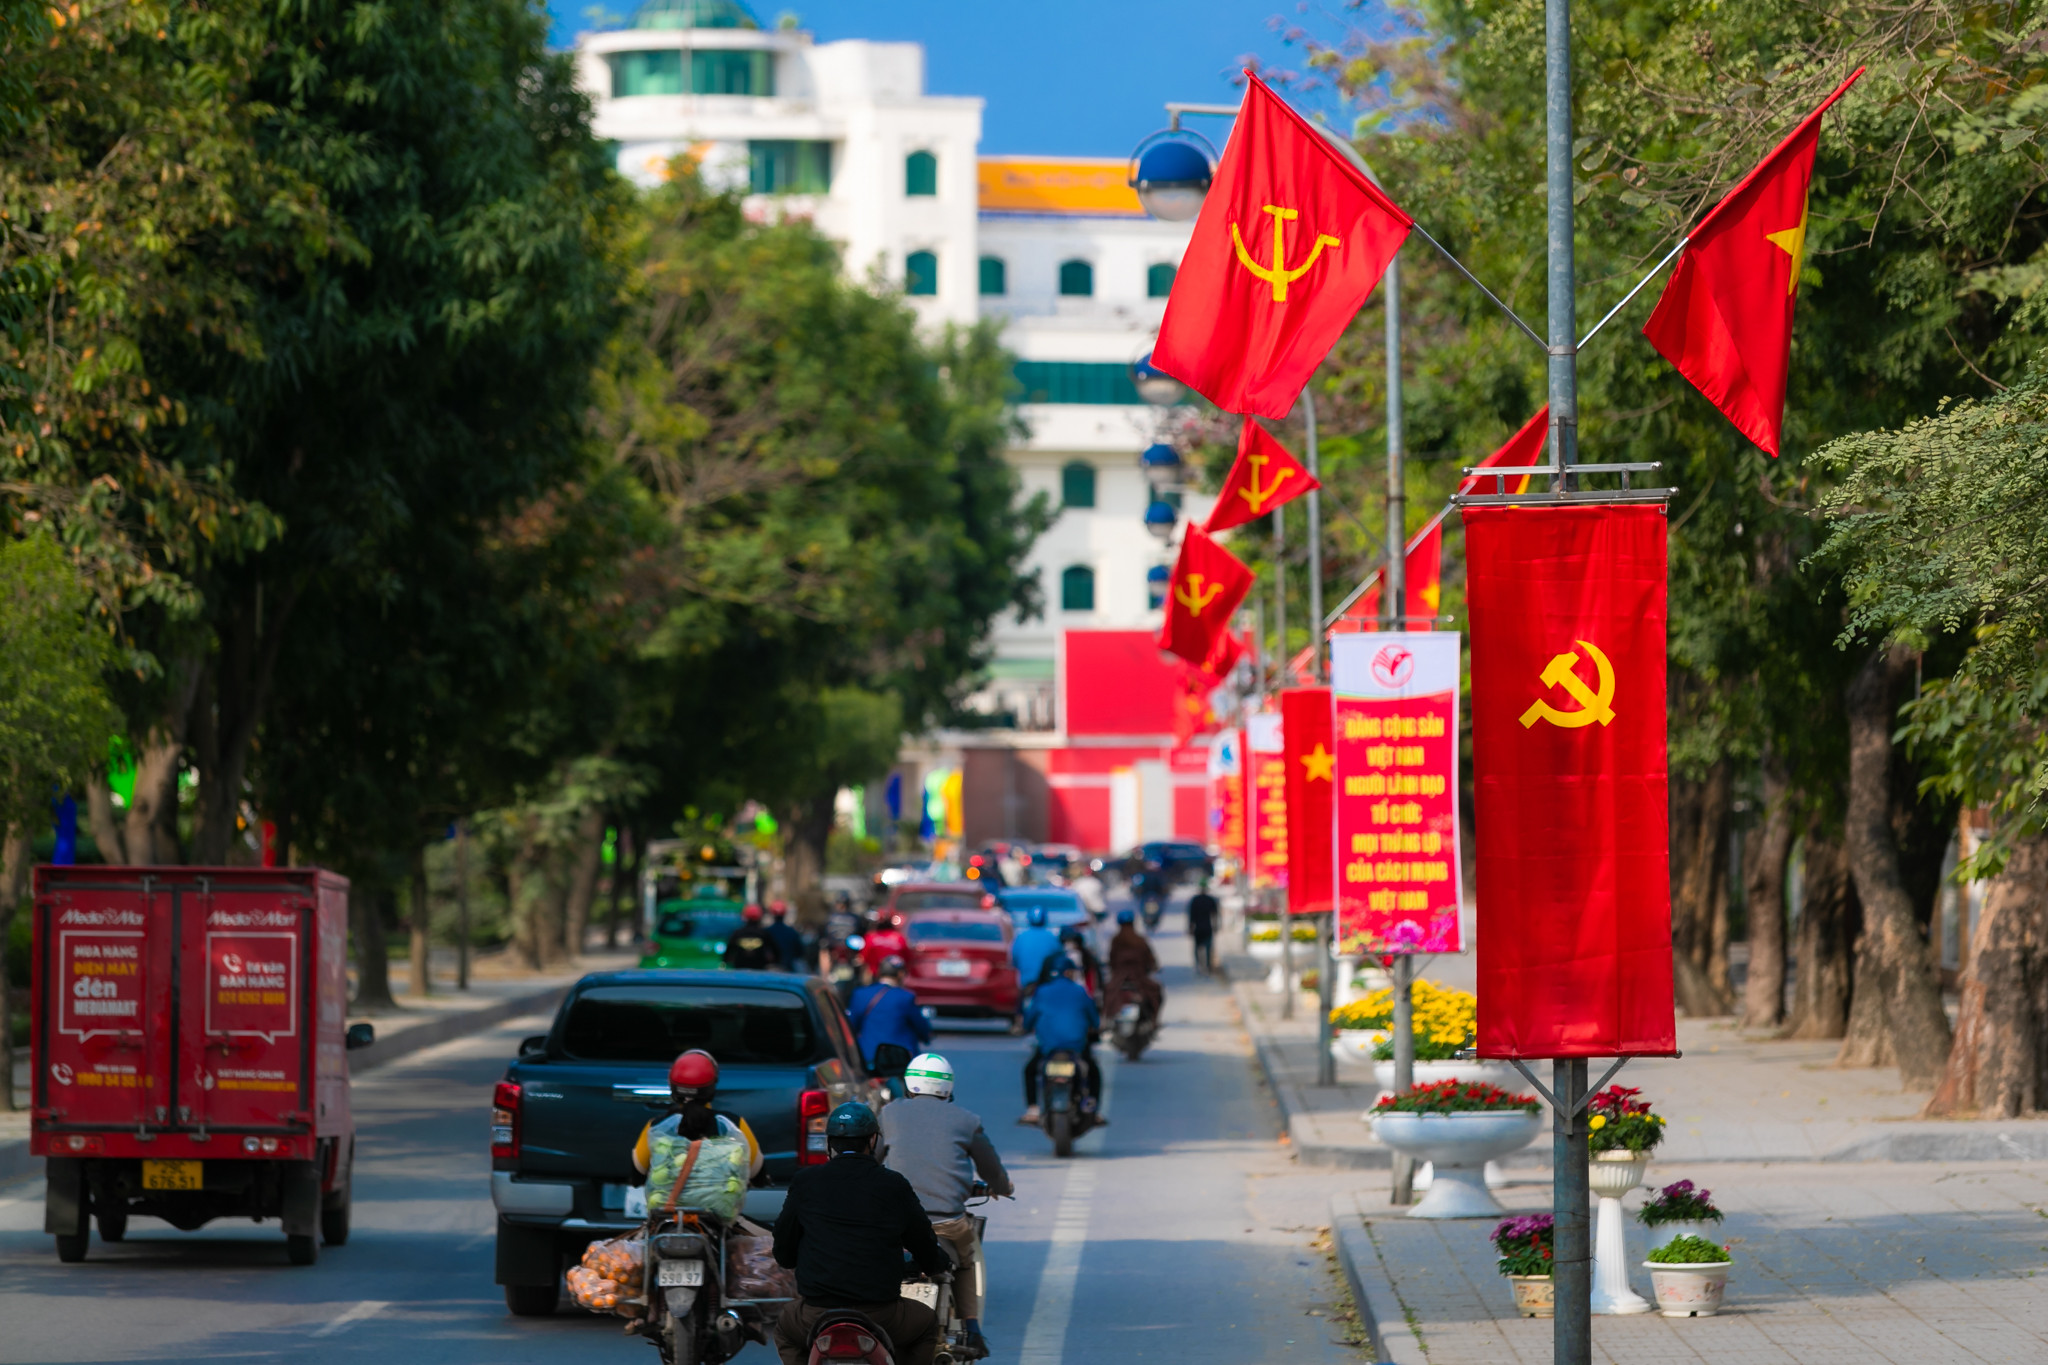 Tuyến đường Lê Mao nơi tập trung lượng lớn các phương tiện giao thông qua lại, ở đây TP đã bố trí dày đặc các lá cờ, các tấm băng rôn với nhiều câu khẩu hiệu gần gũi dễ nhớ tạo không khí rộn ràng chào mừng ngày thành lập Đảng. Ảnh: Đức Anh